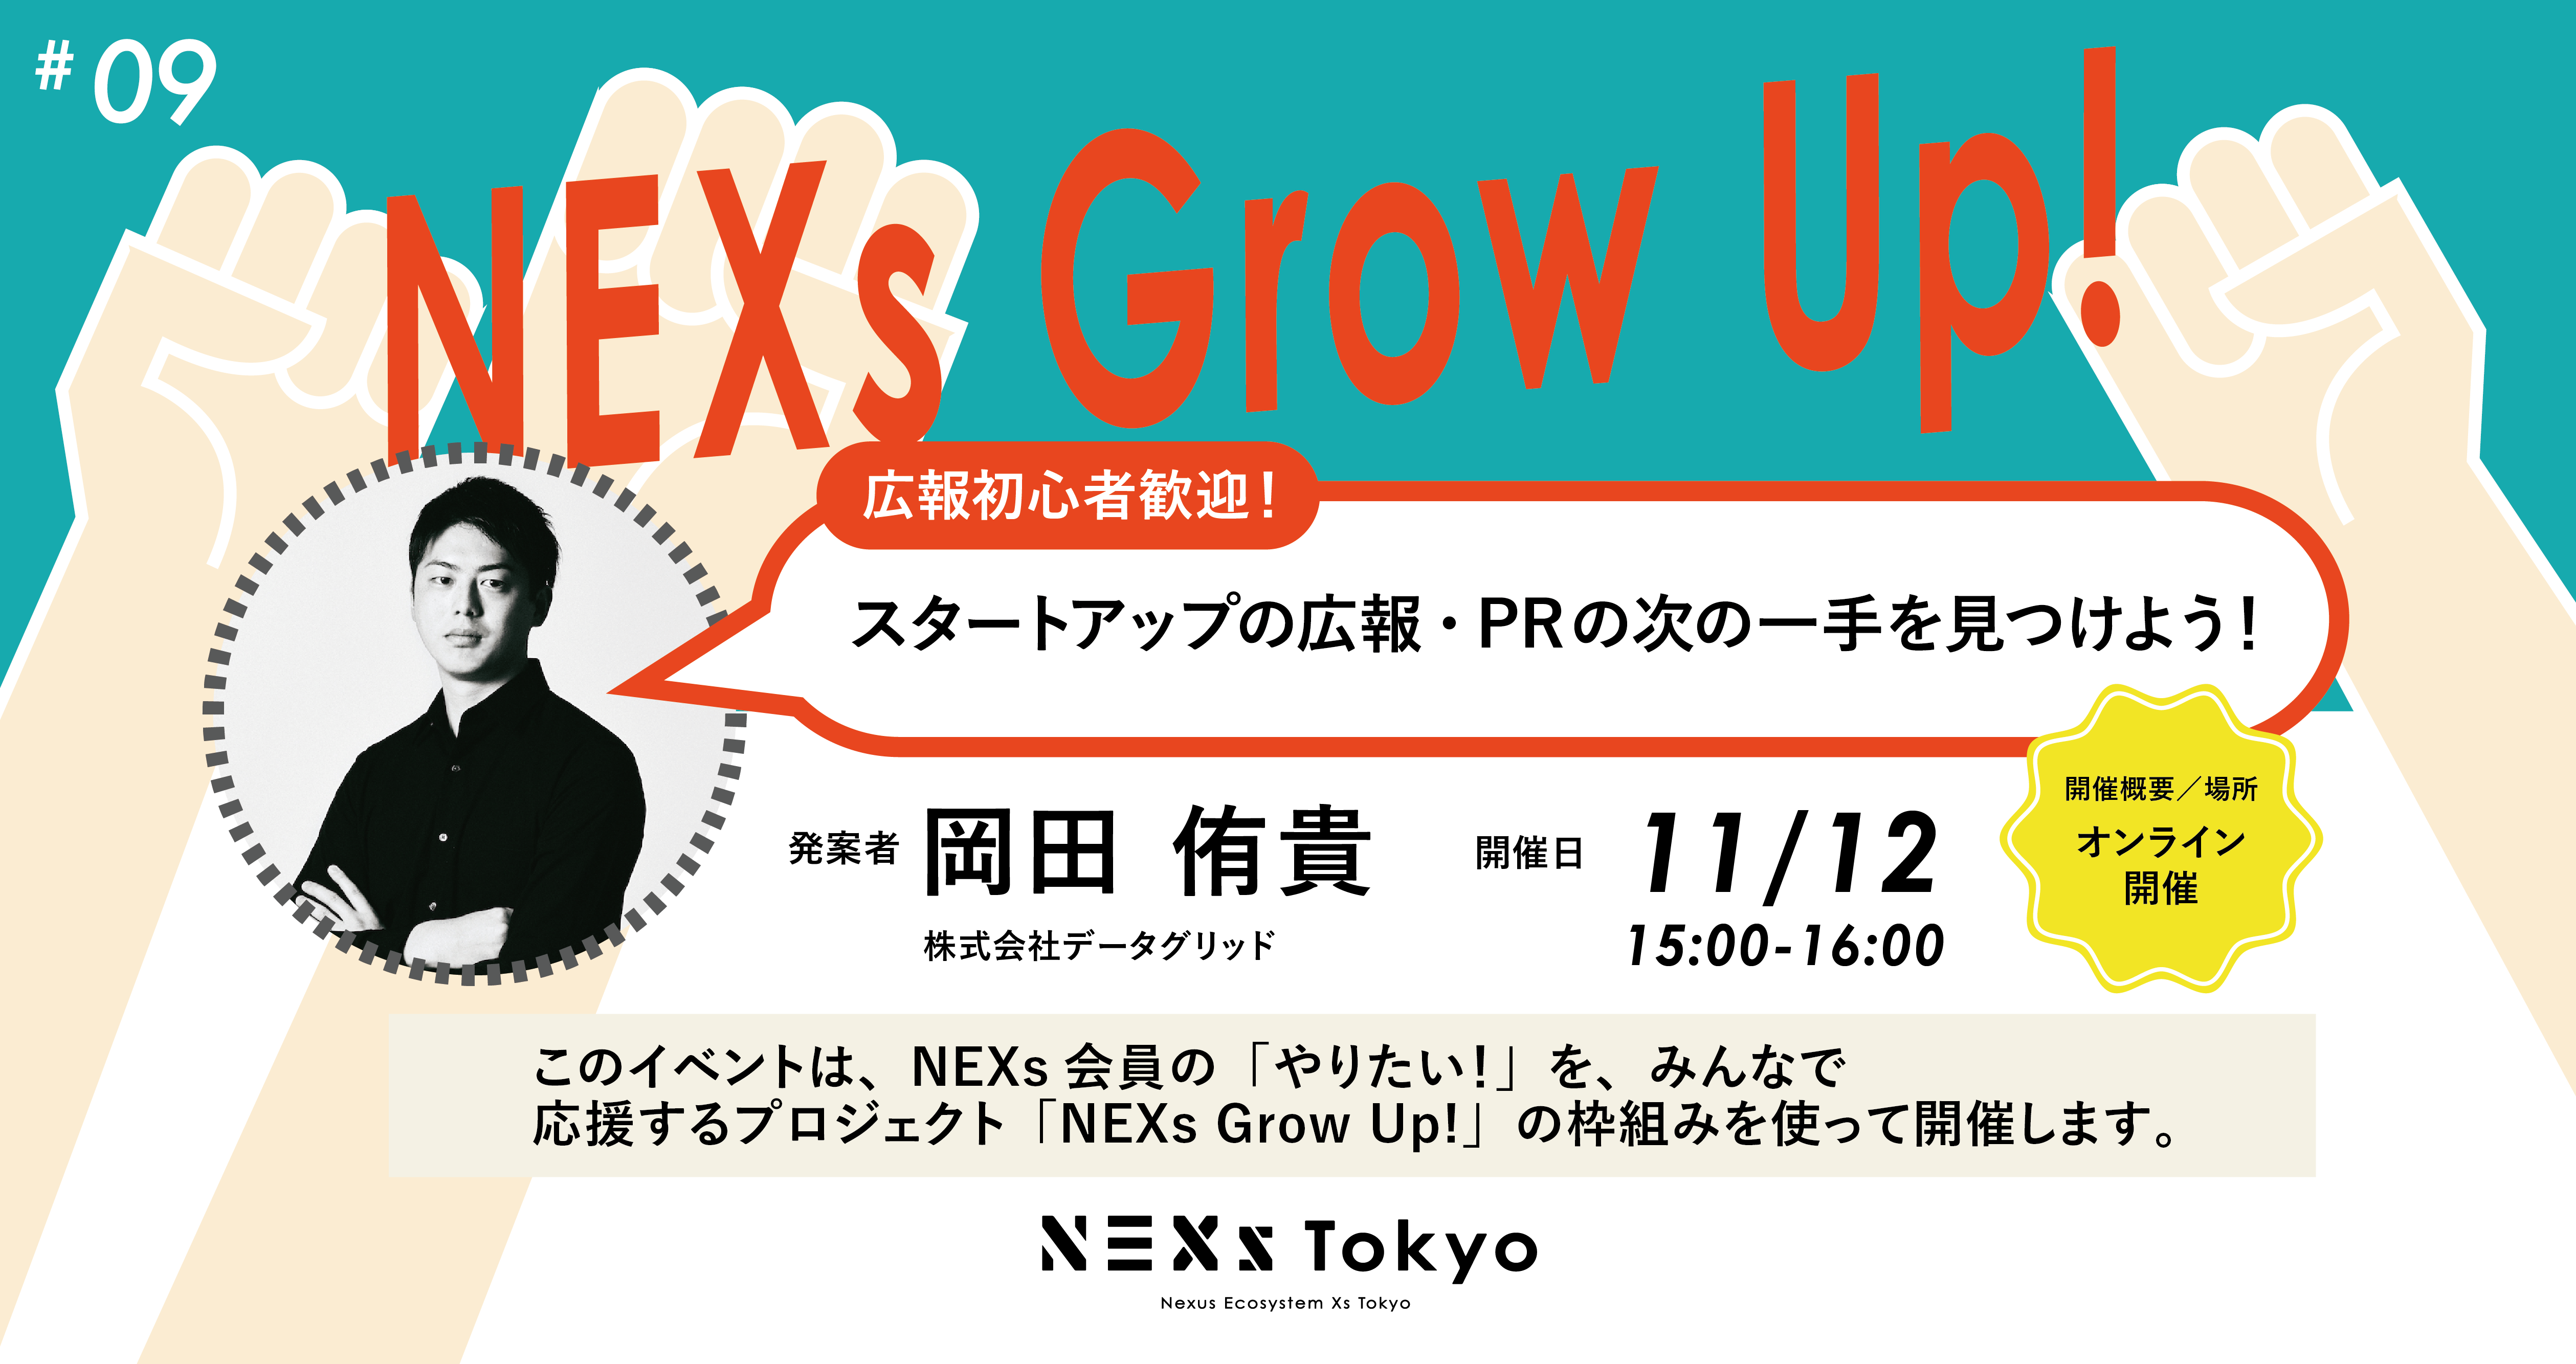 NEXs Grow Up! vol.9 スタートアップの広報・PRの次の一手を見つけよう！